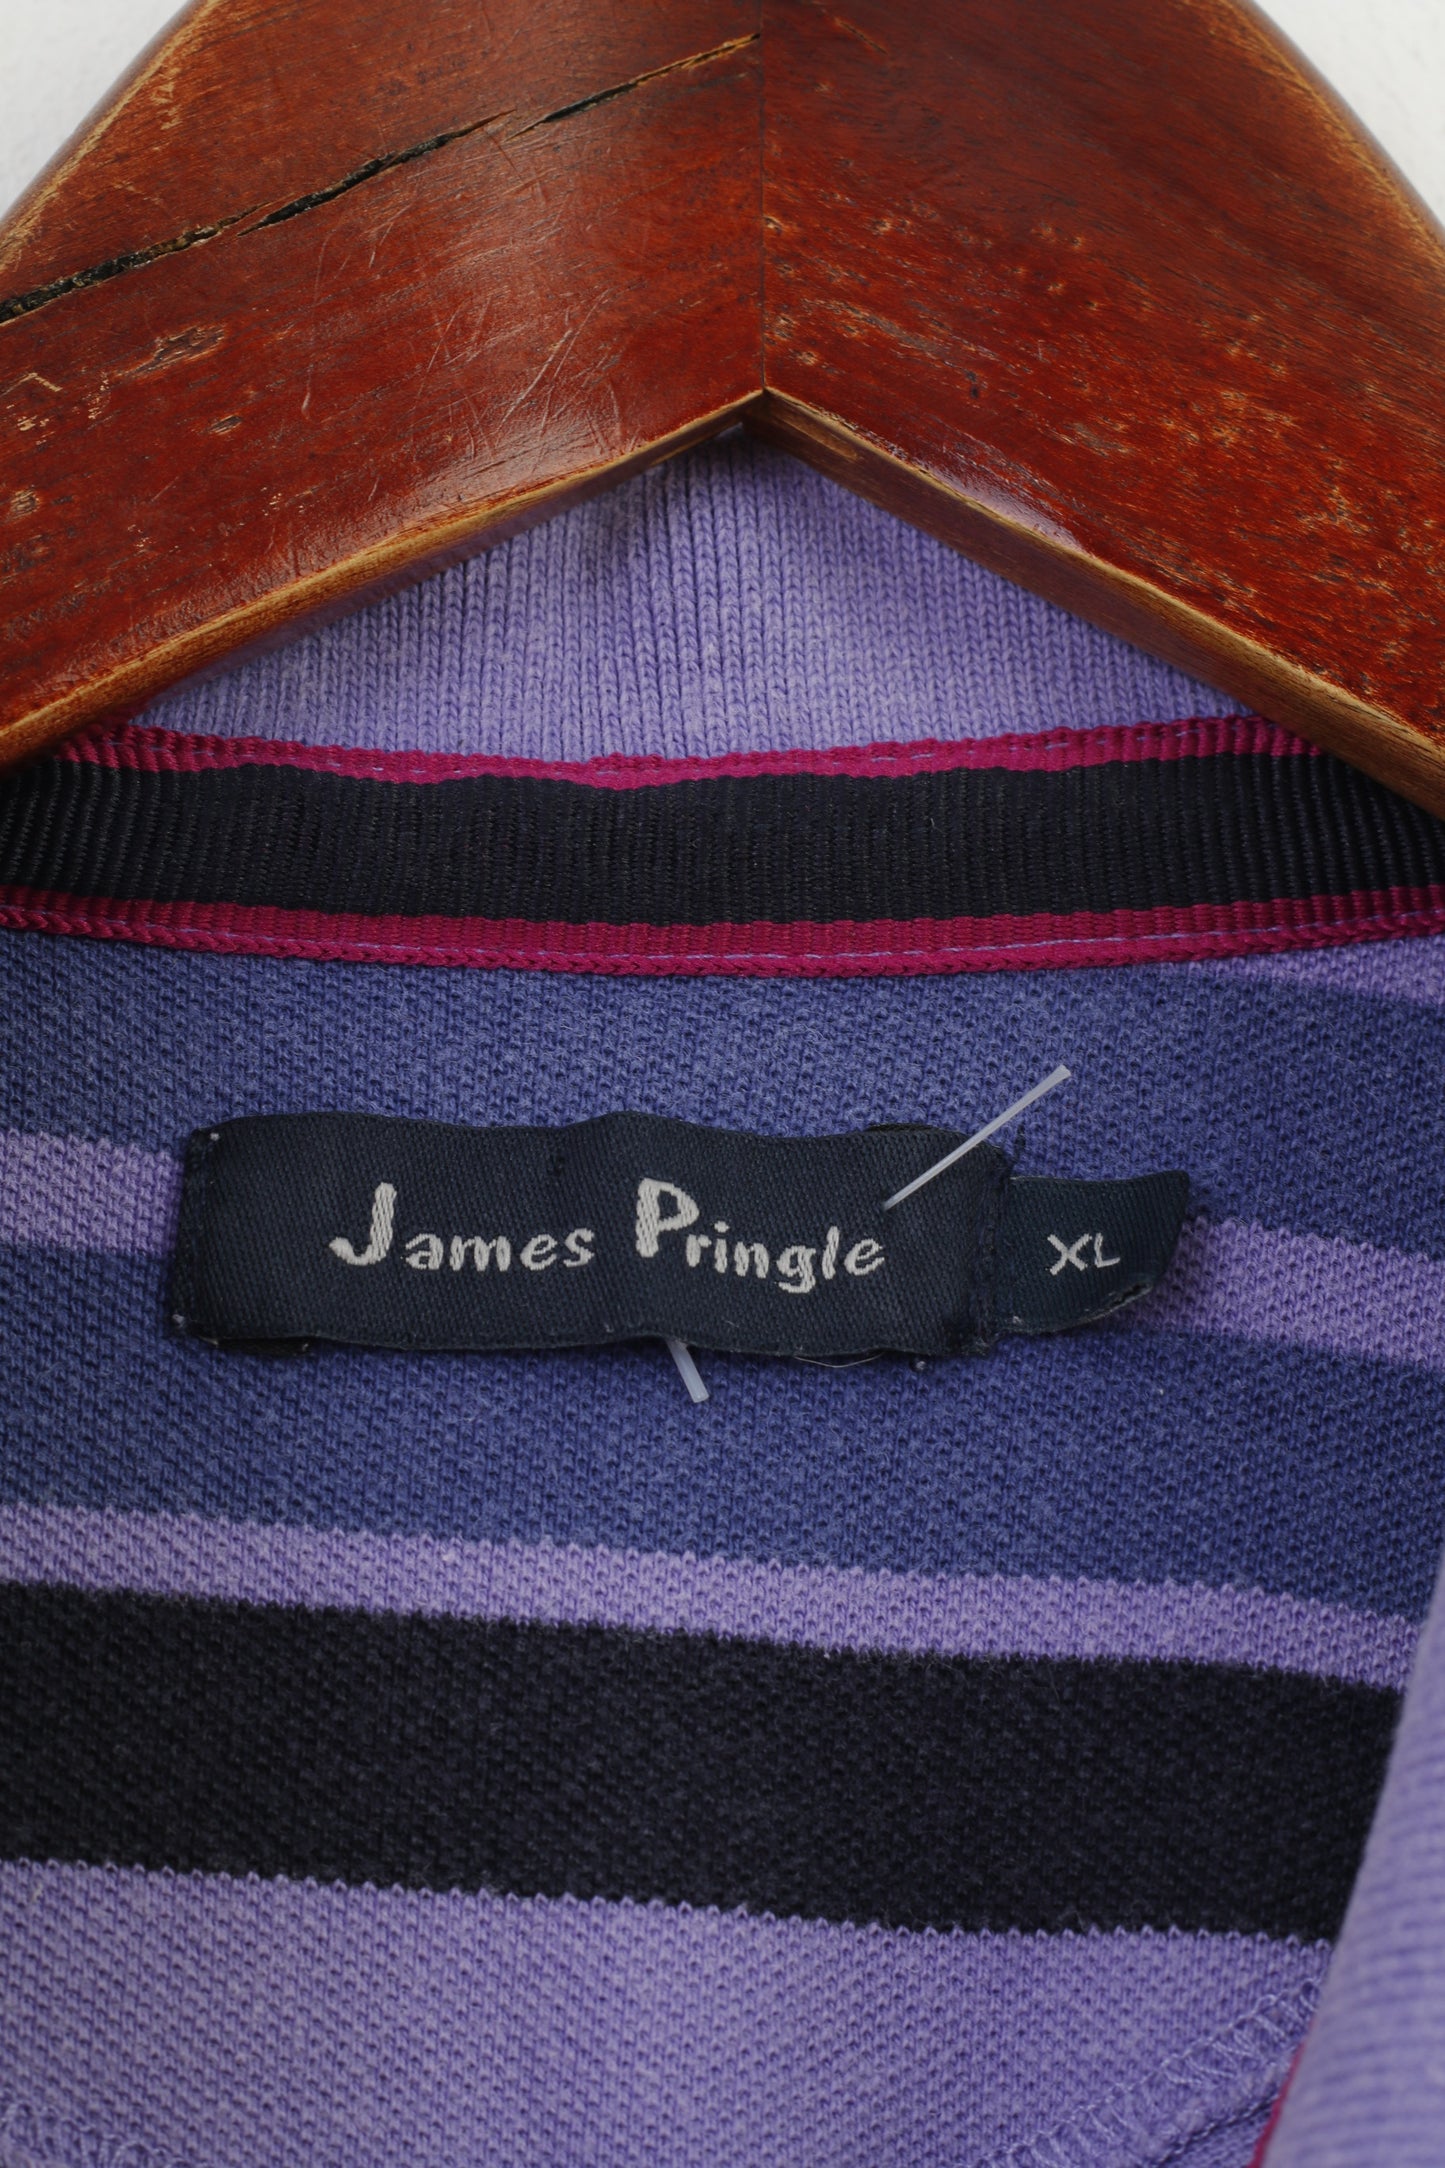 Polo James Pringle da uomo XL a maniche corte in cotone a righe viola con colletto classico